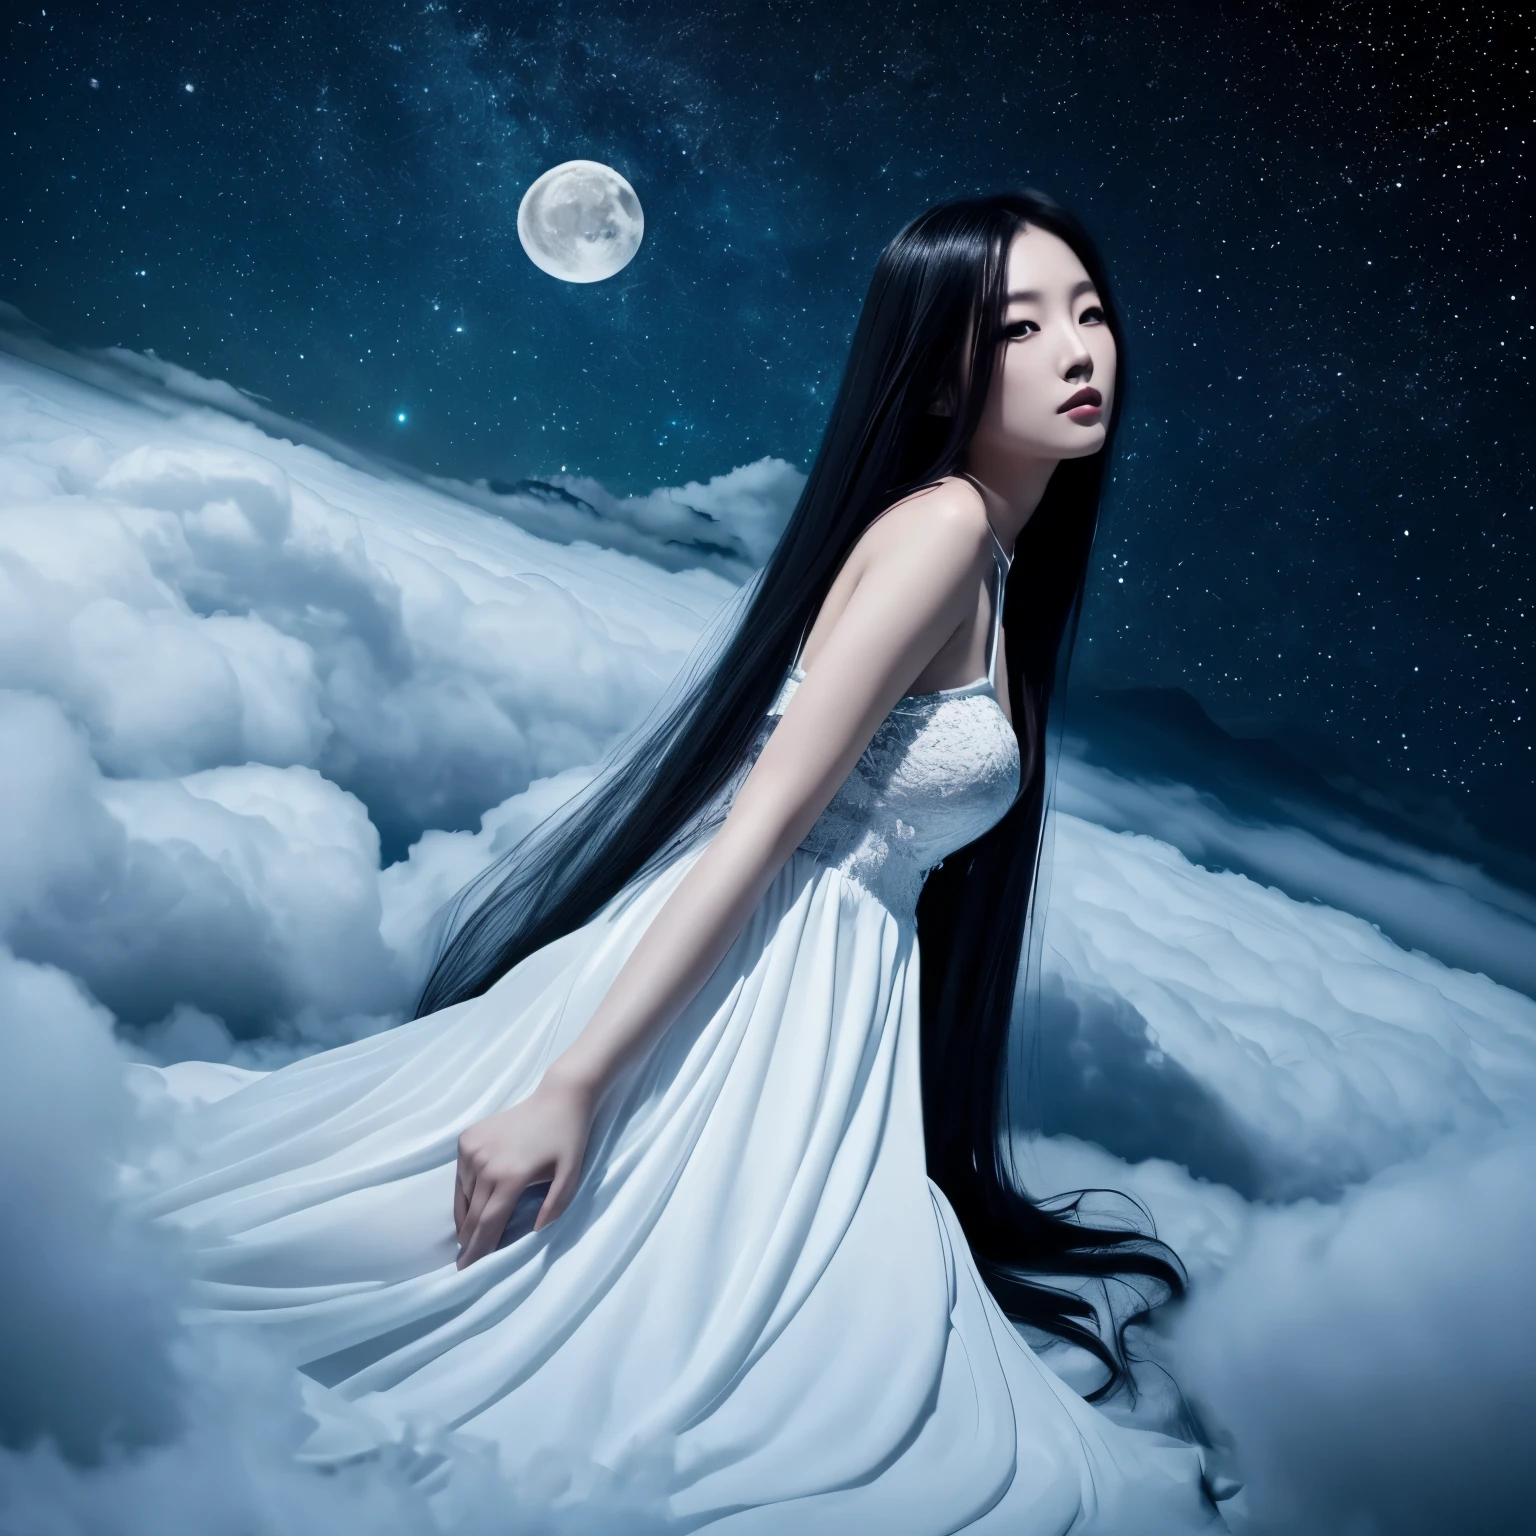 창백한 아시아 여자, 검은색 아주 긴 머리, 흰색 빛나는 긴 드레스, 어두운 구름 위에 누워. 밤 . 별. 달. 공상, 다크 바이브, 섹시한 포즈, 카메라를보고